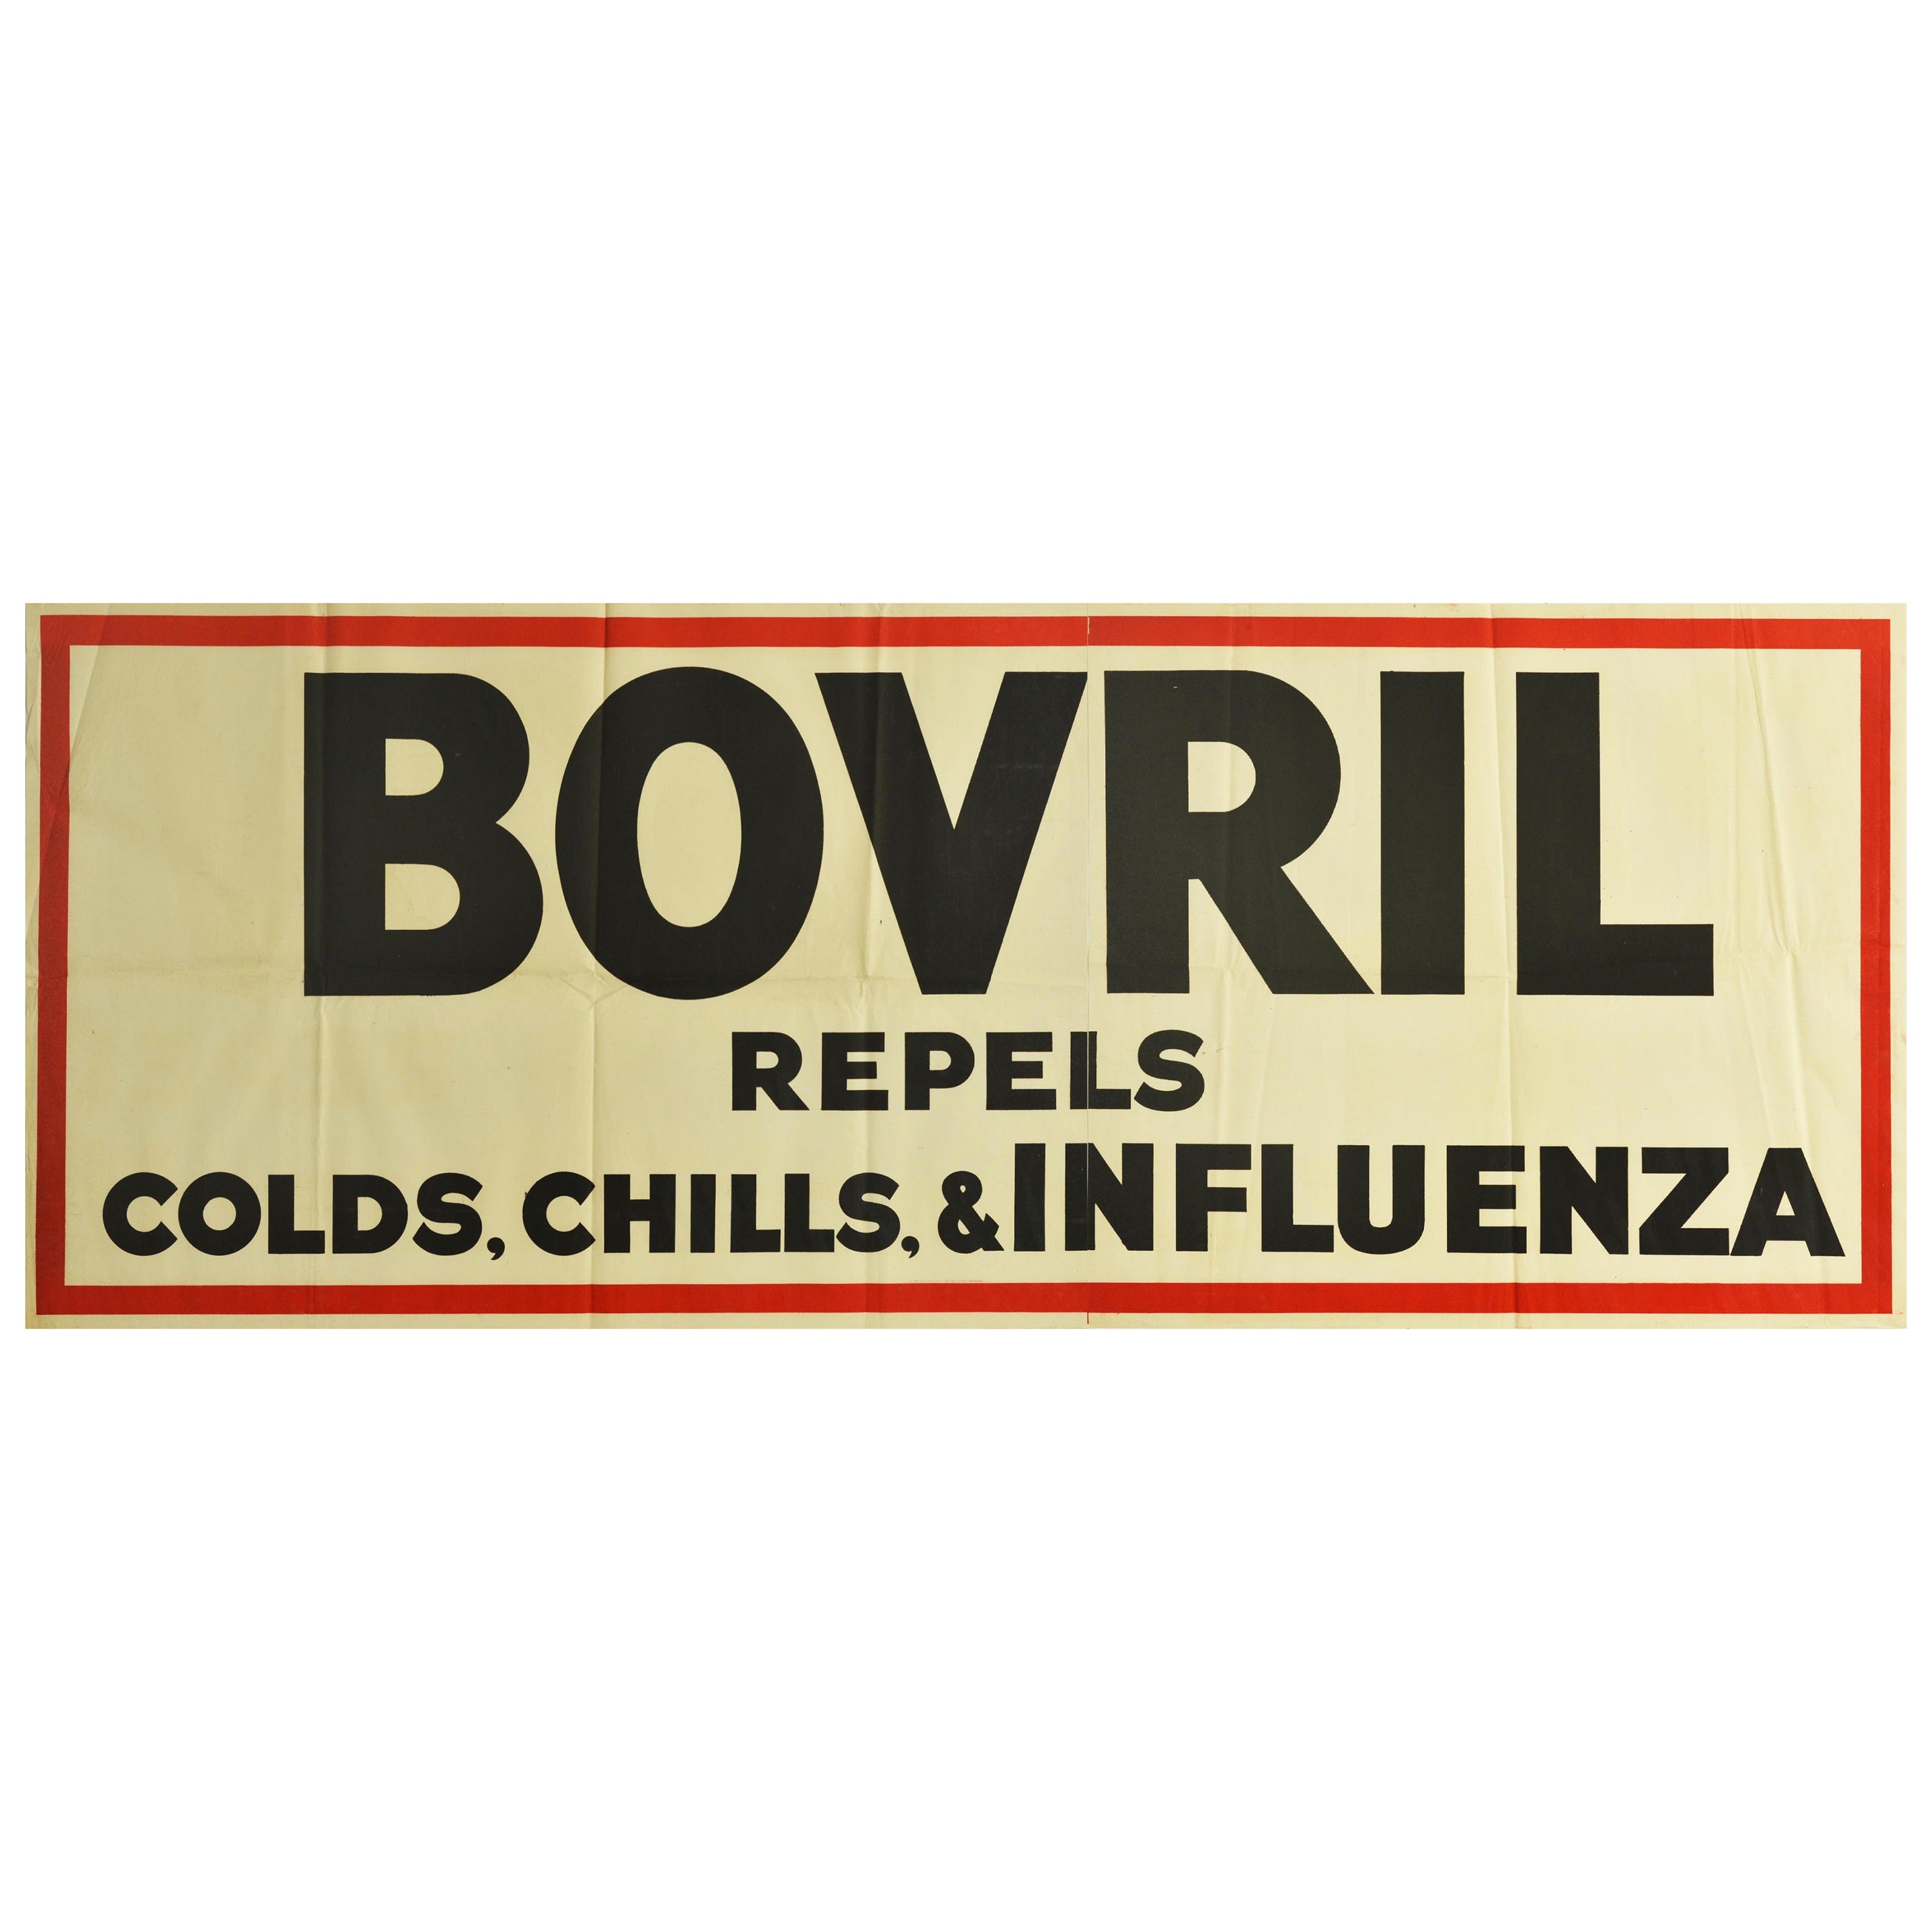 Original Vintage Poster Bovril Repels Colds Chills & Influenza Beef Drink Food For Sale